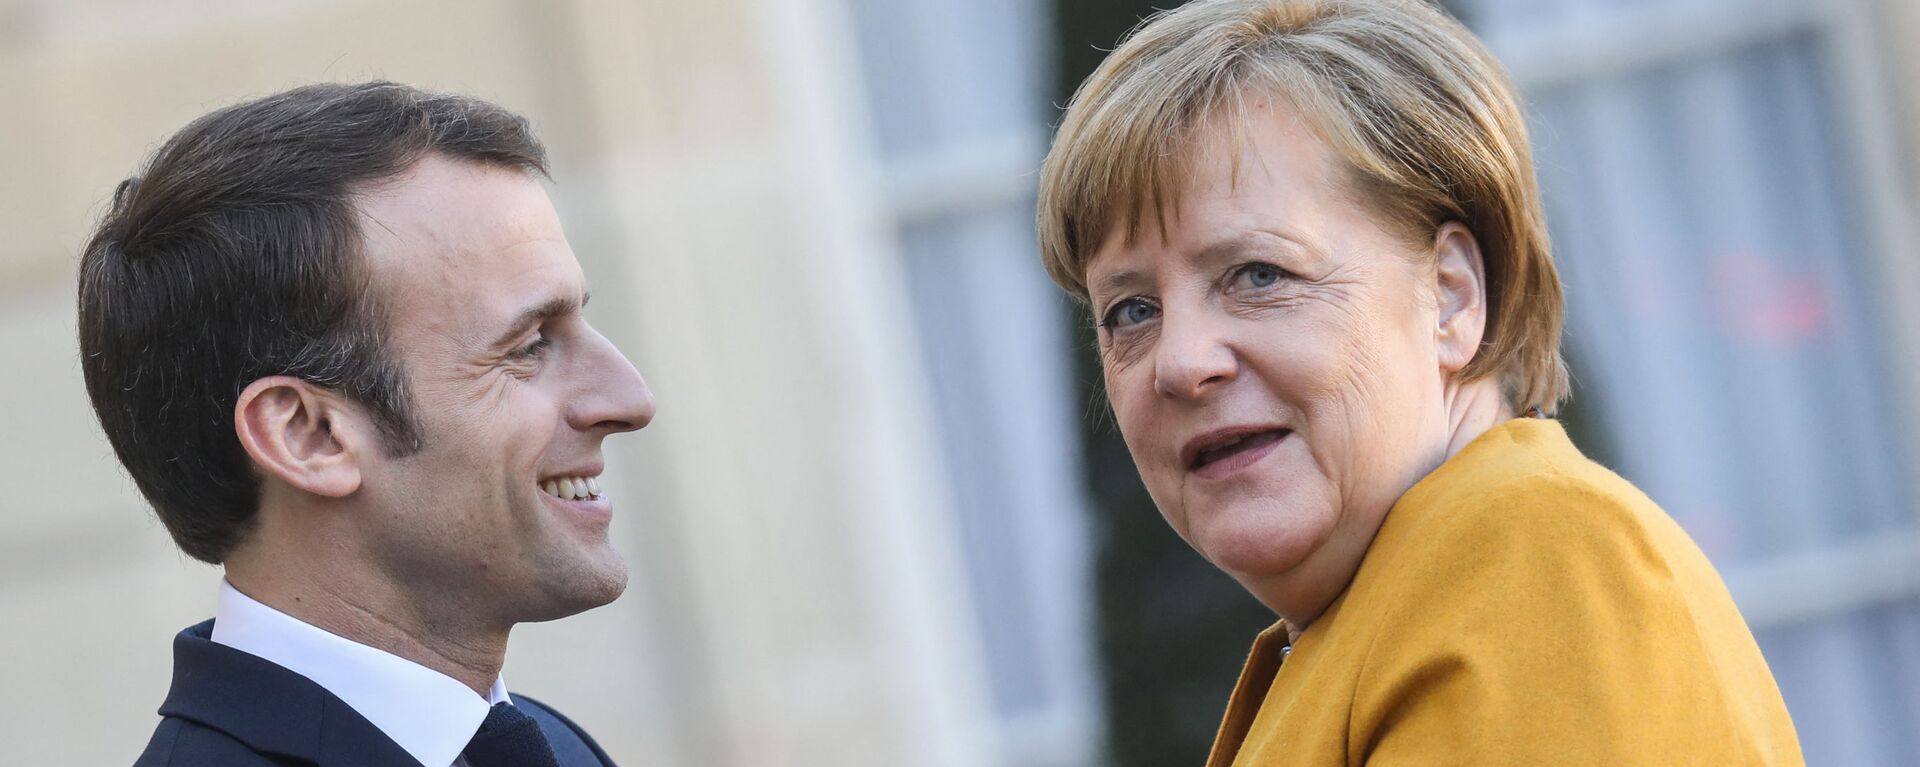 Emmanuel Macron accueille Angela Merkel à l’֤Élysée, 27 février 2019 - Sputnik Afrique, 1920, 14.03.2021